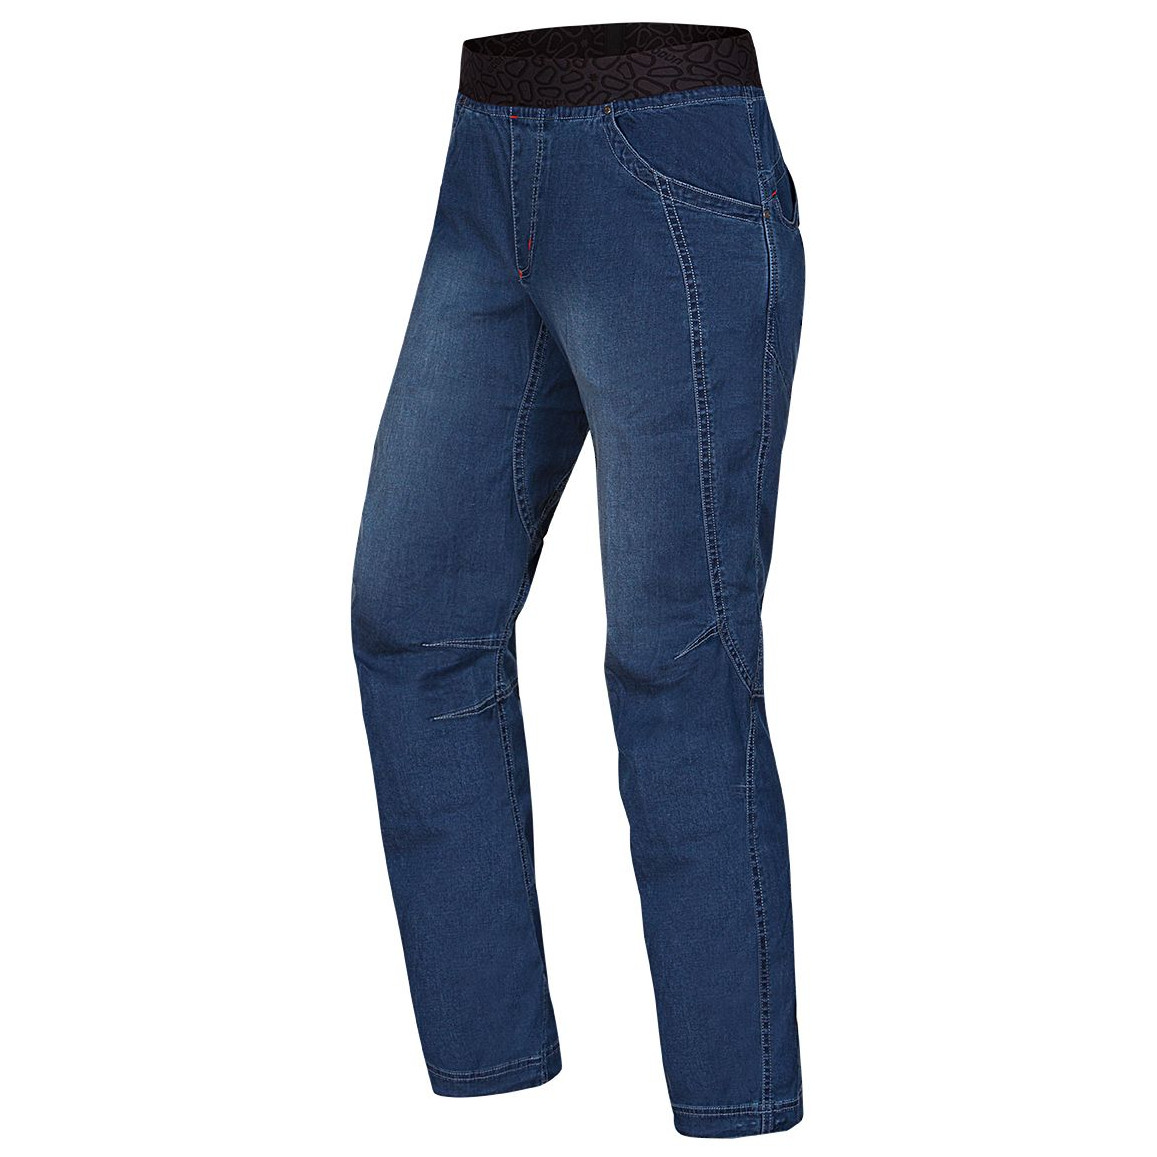 Pánské kalhoty Ocún Mania Jeans Velikost: M / Barva: tmavě modrá